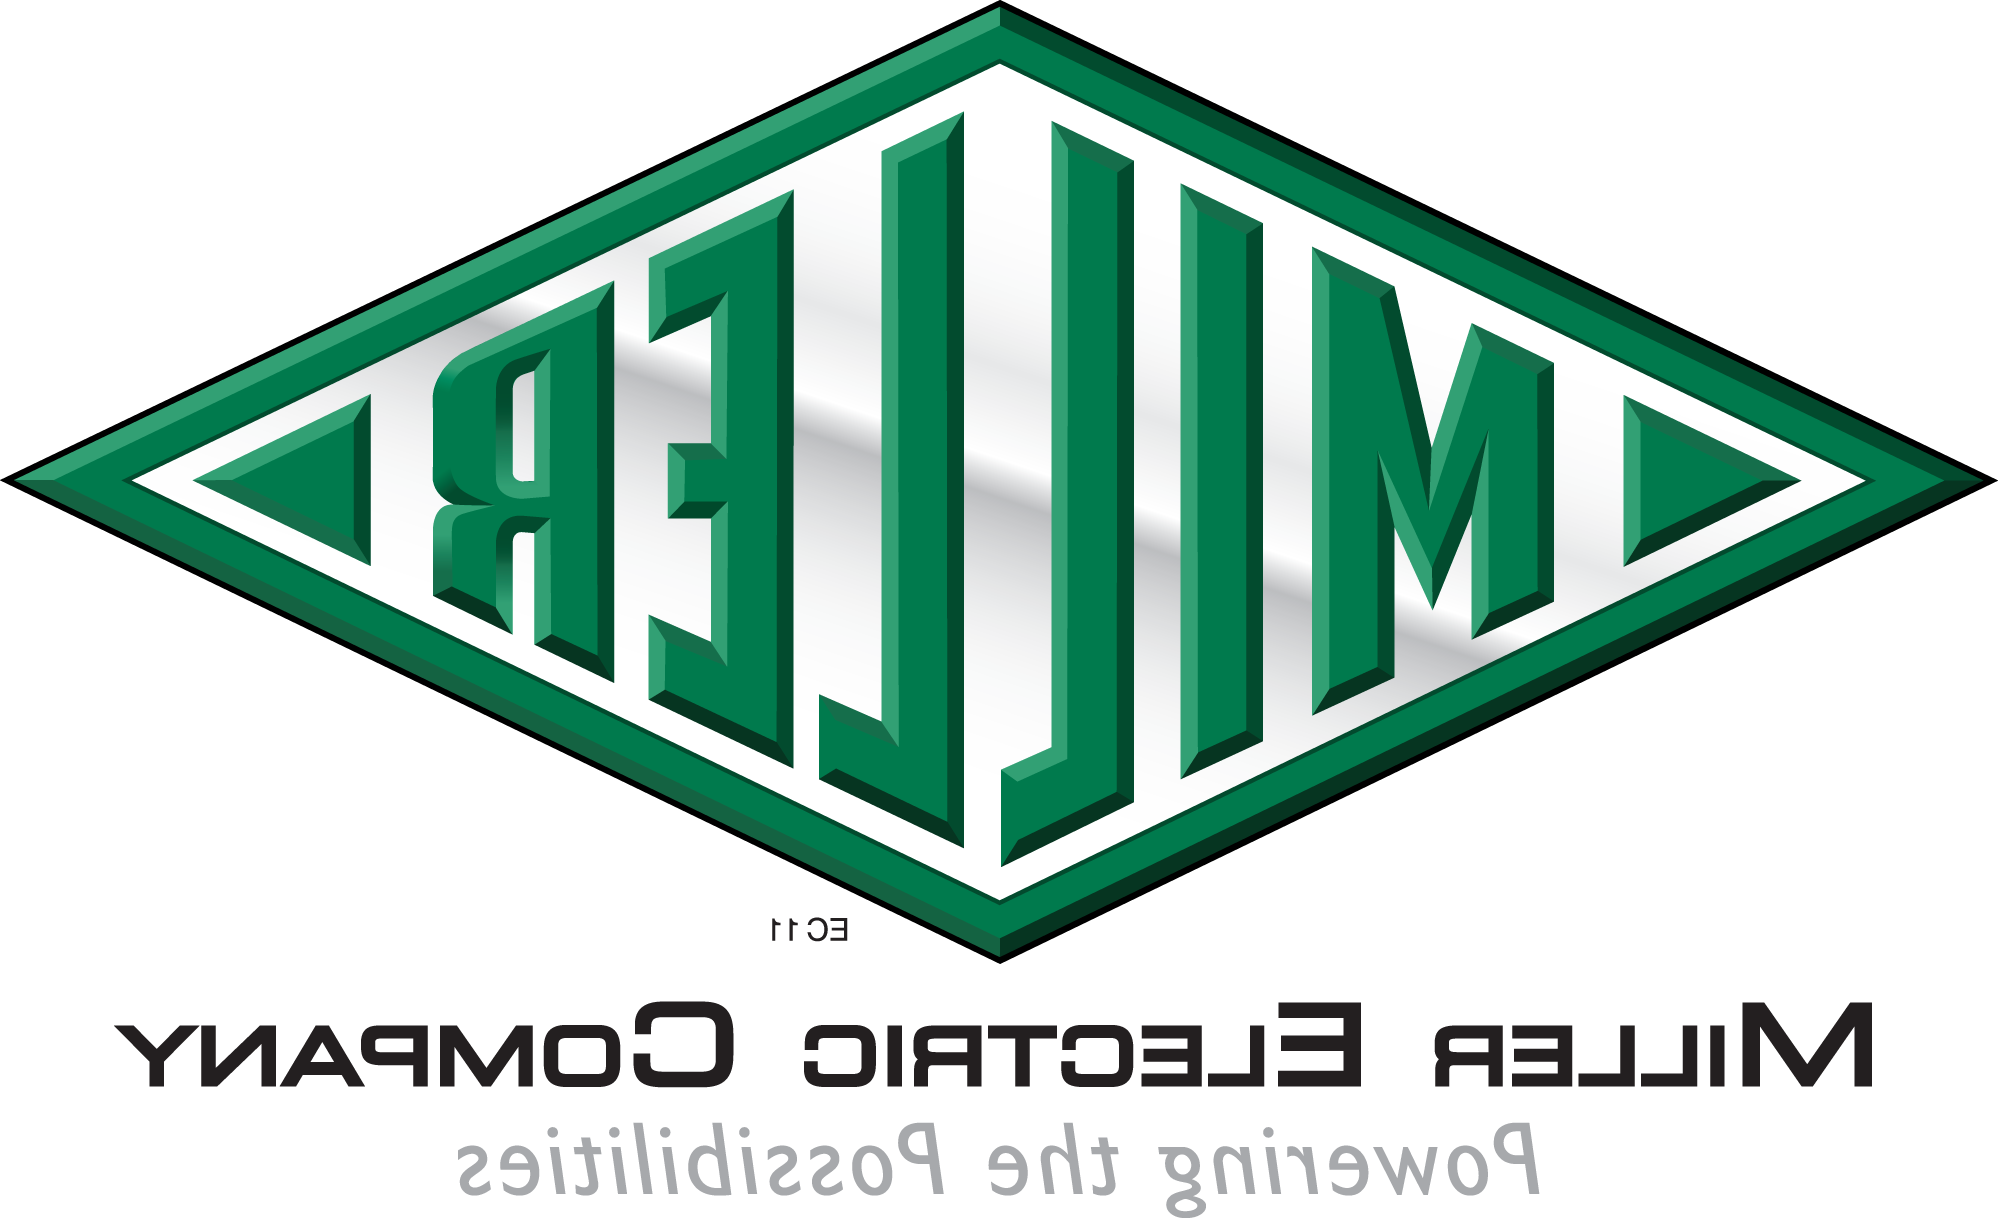 Miller Electric logo